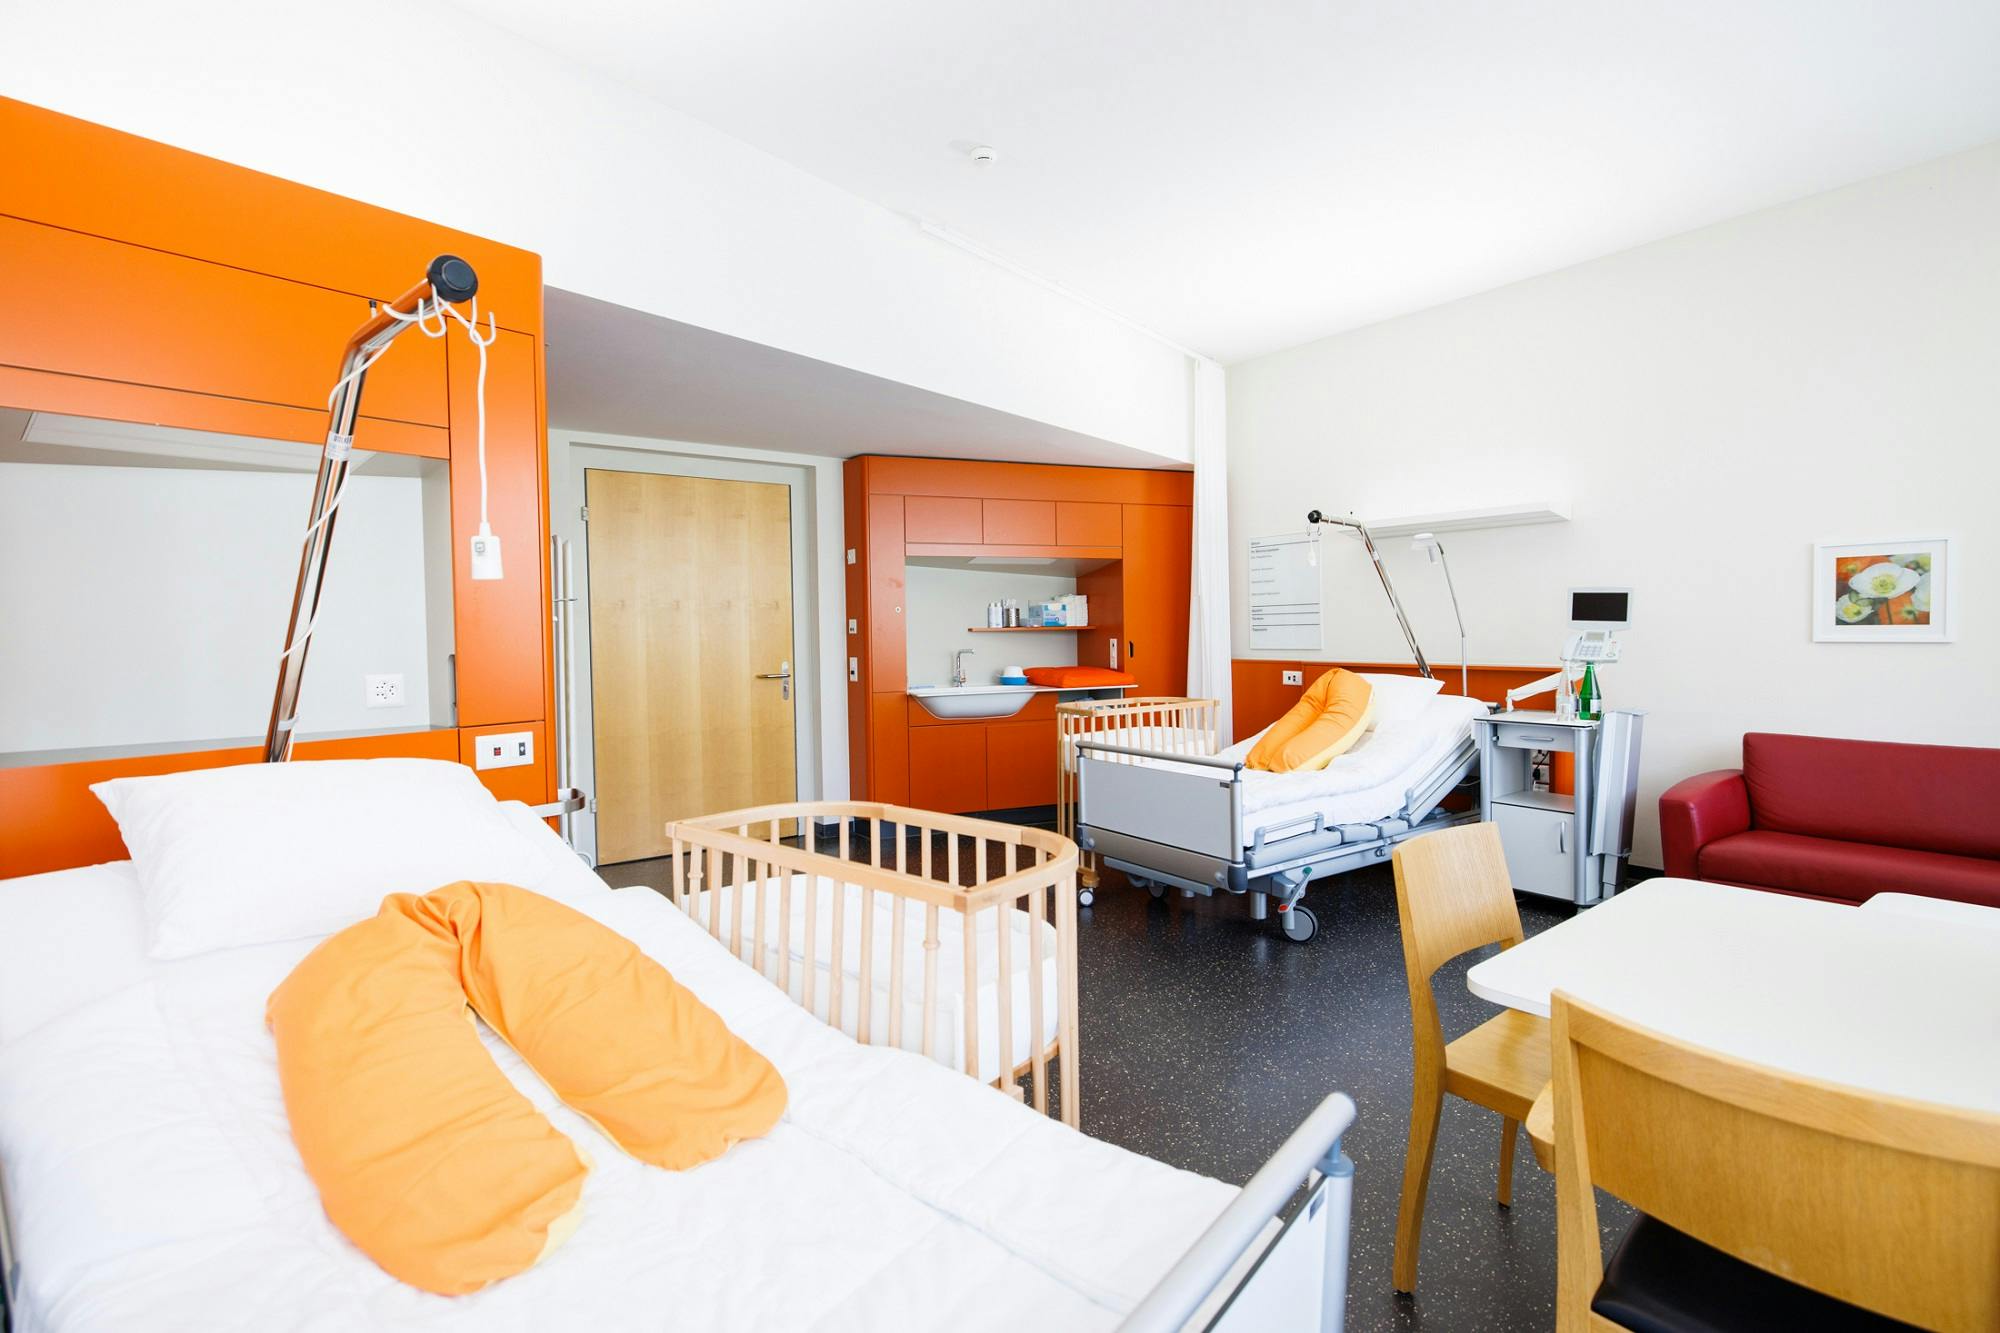 Helles Krankenzimmer mit orangefarbenen Akzenten, einem Patientenbett, einem Kinderbett und medizinischer Ausstattung.